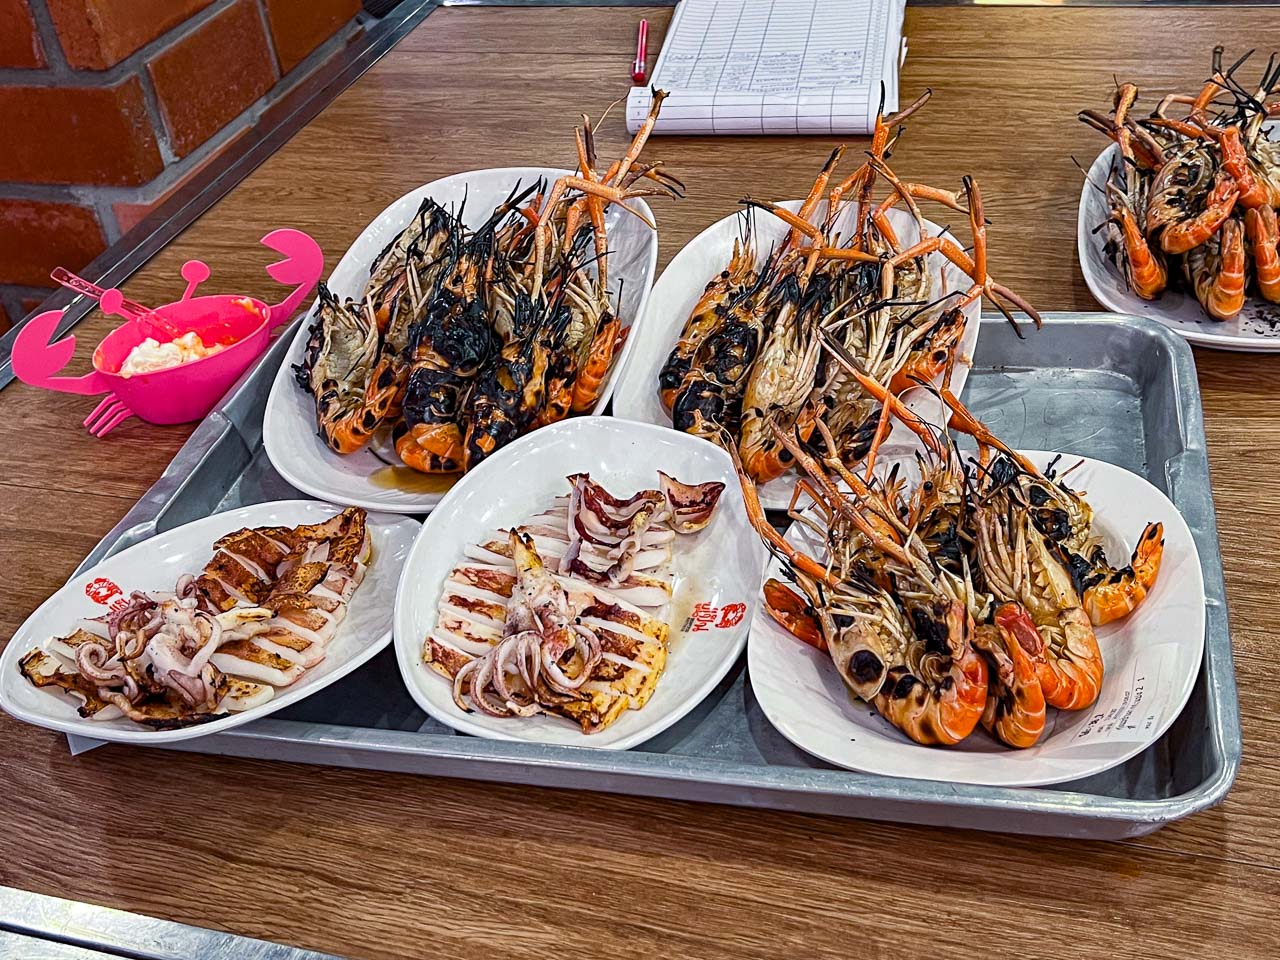 泰國美食,芭達雅美食,Pupen Seafood,芭達雅海鮮餐廳,泰國海鮮餐廳